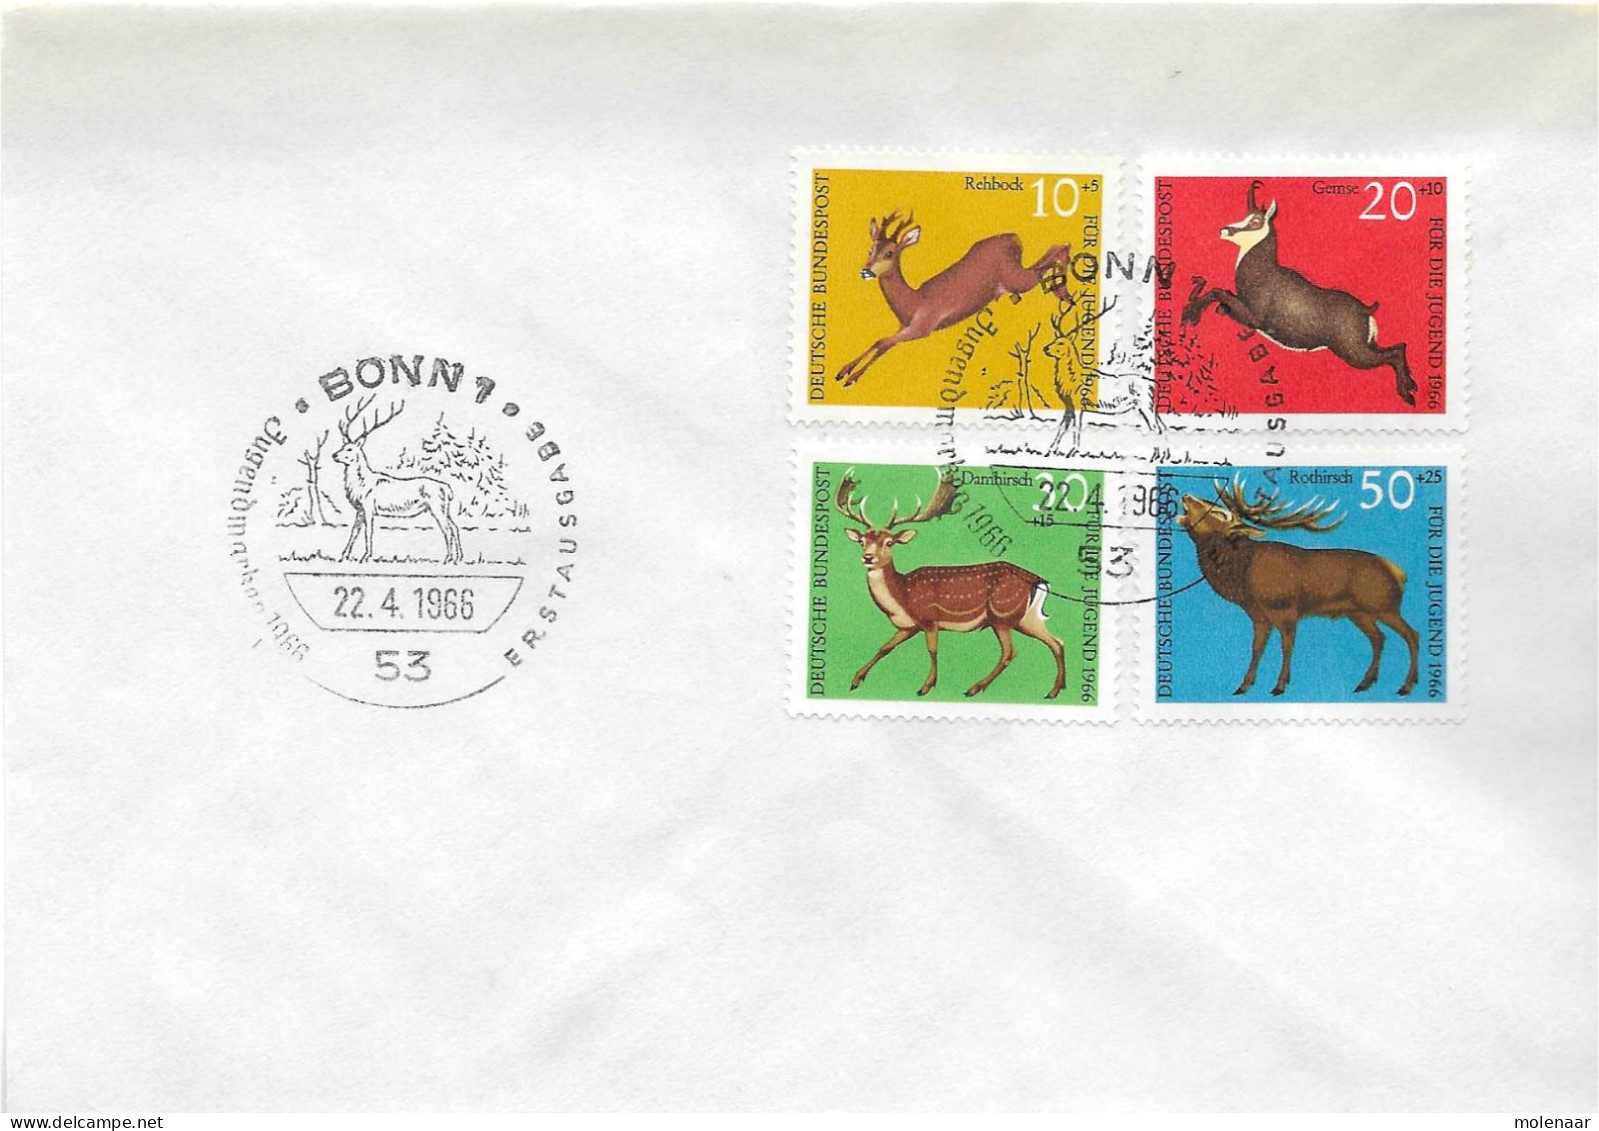 Postzegels > Europa > Duitsland > West-Duitsland > 1960-1969 > Brief Met No. 511-514 (17380) - Storia Postale